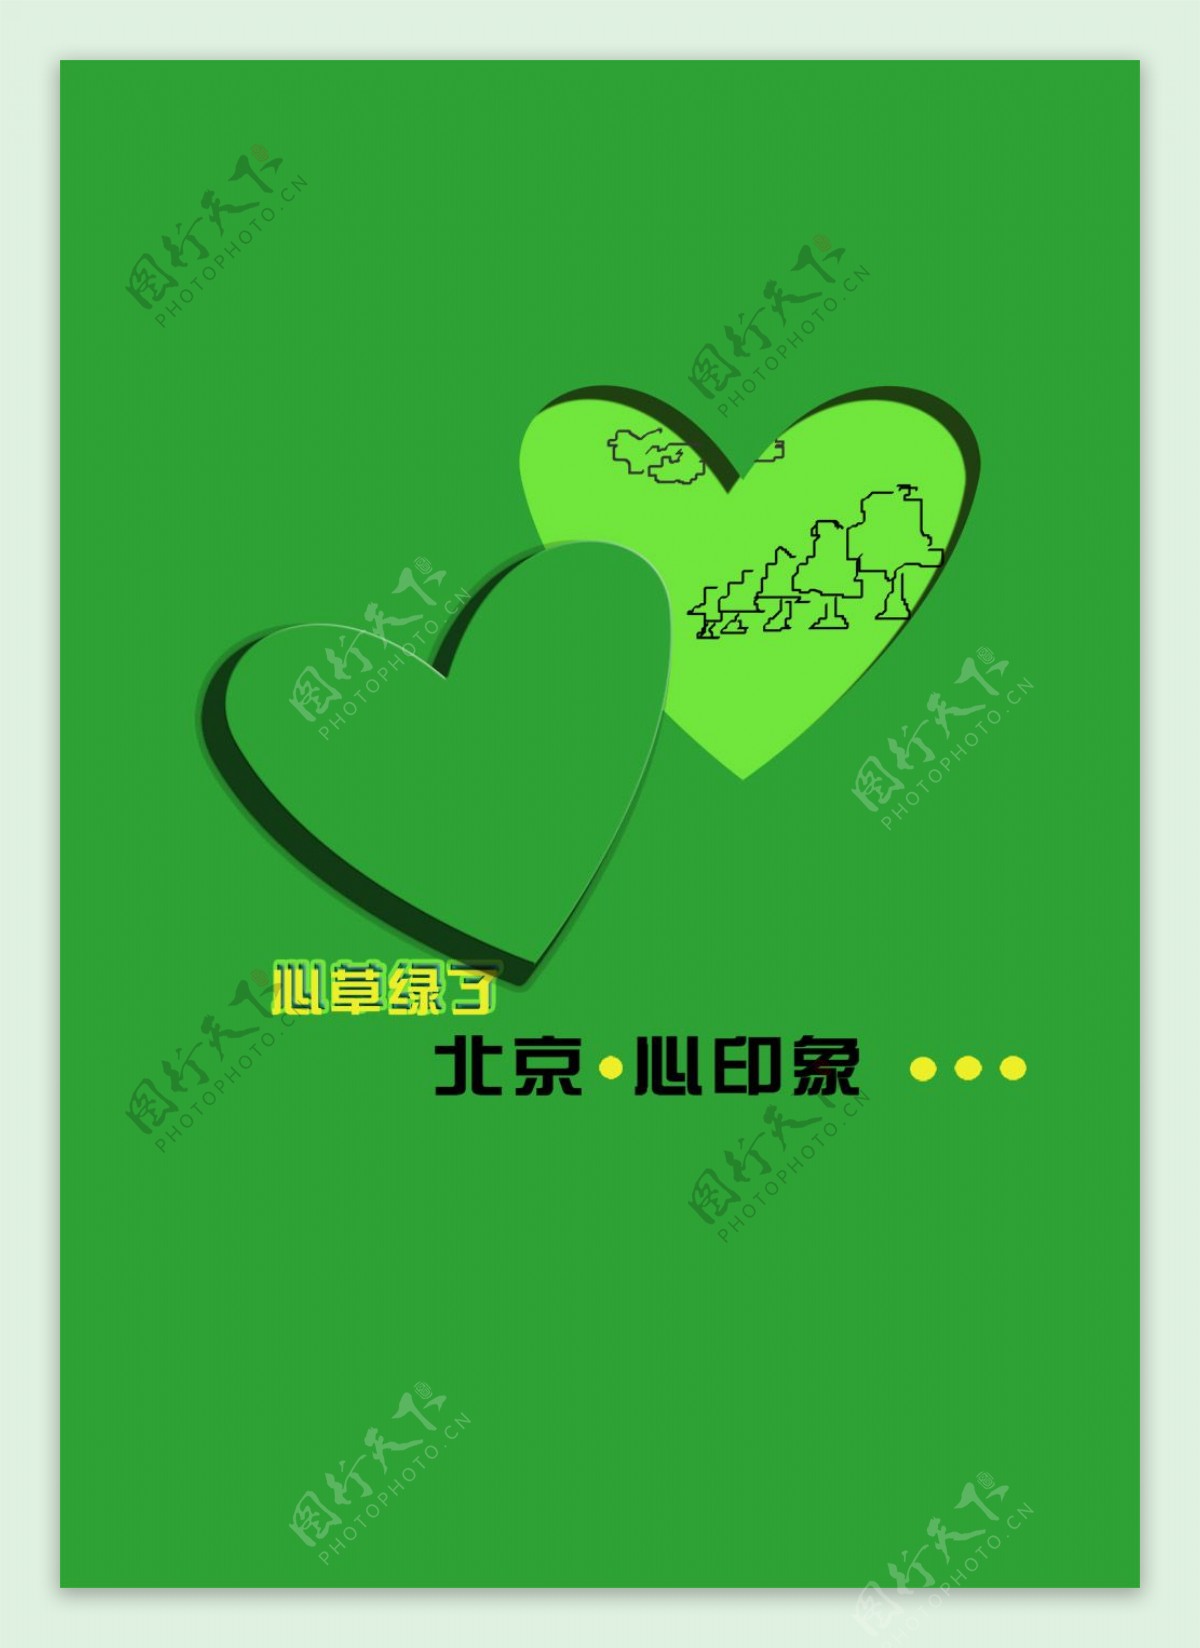 北京印象绿色环保海报PSD素